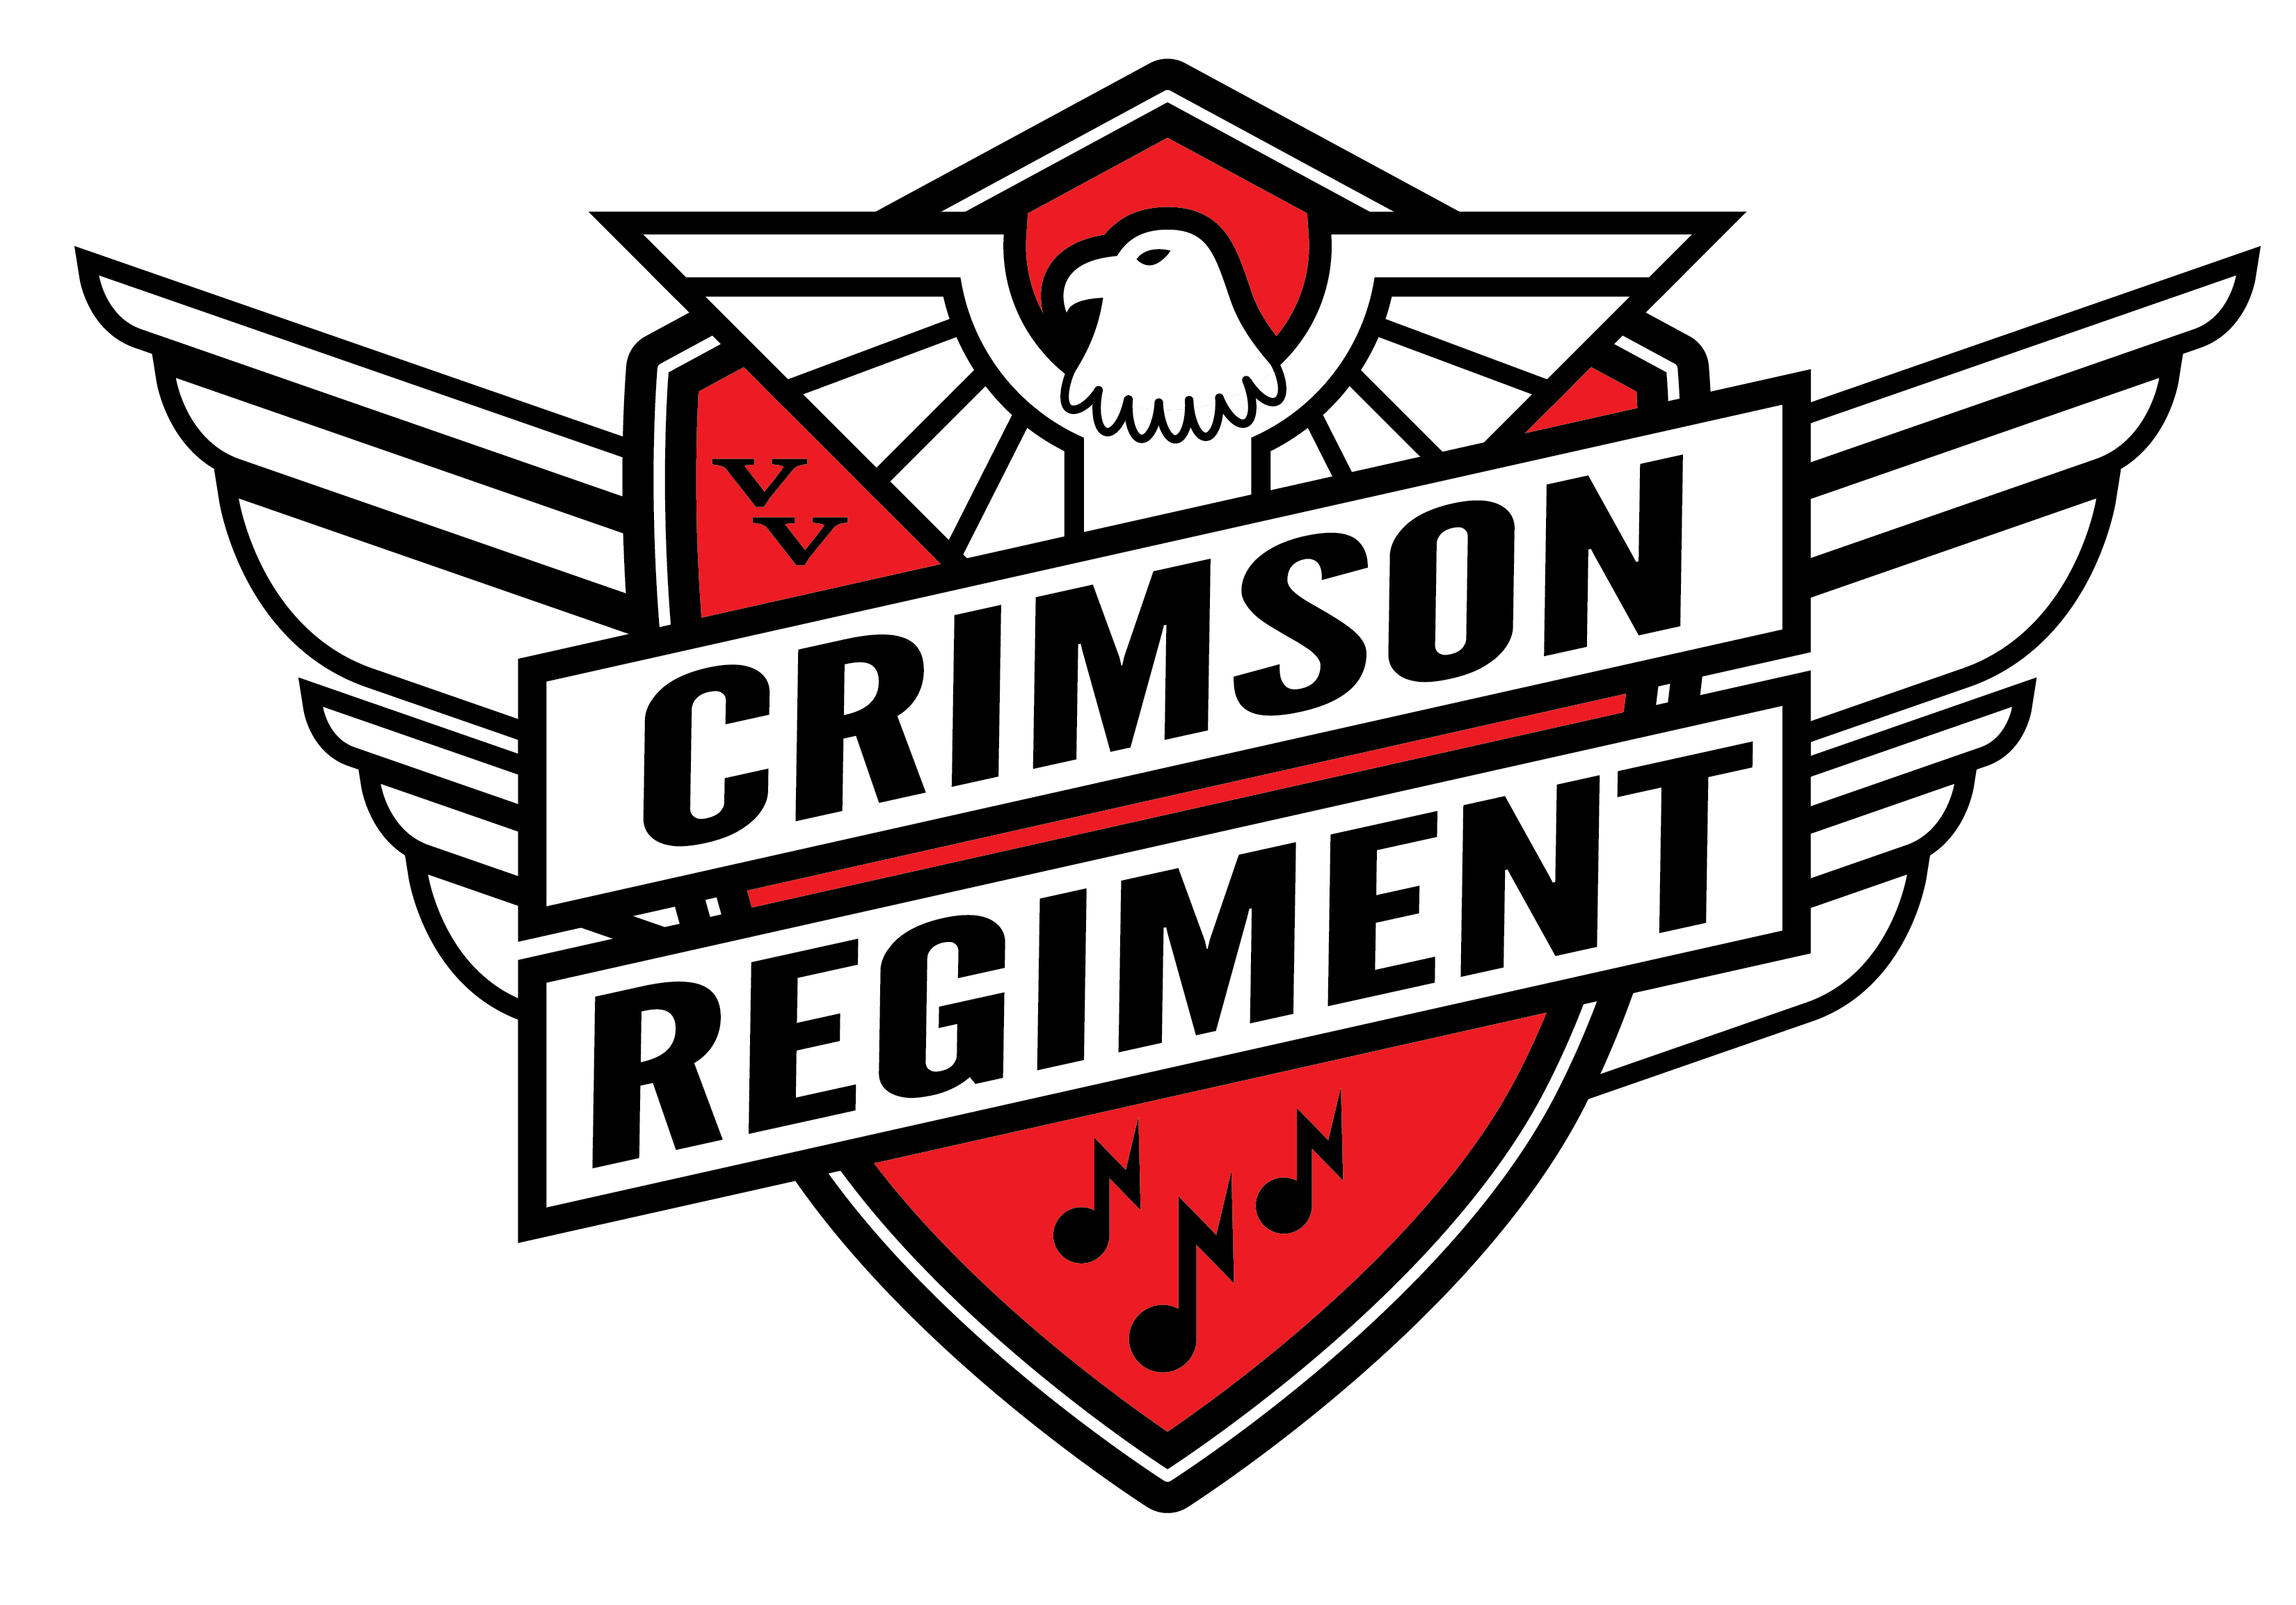 Crimson Regiment